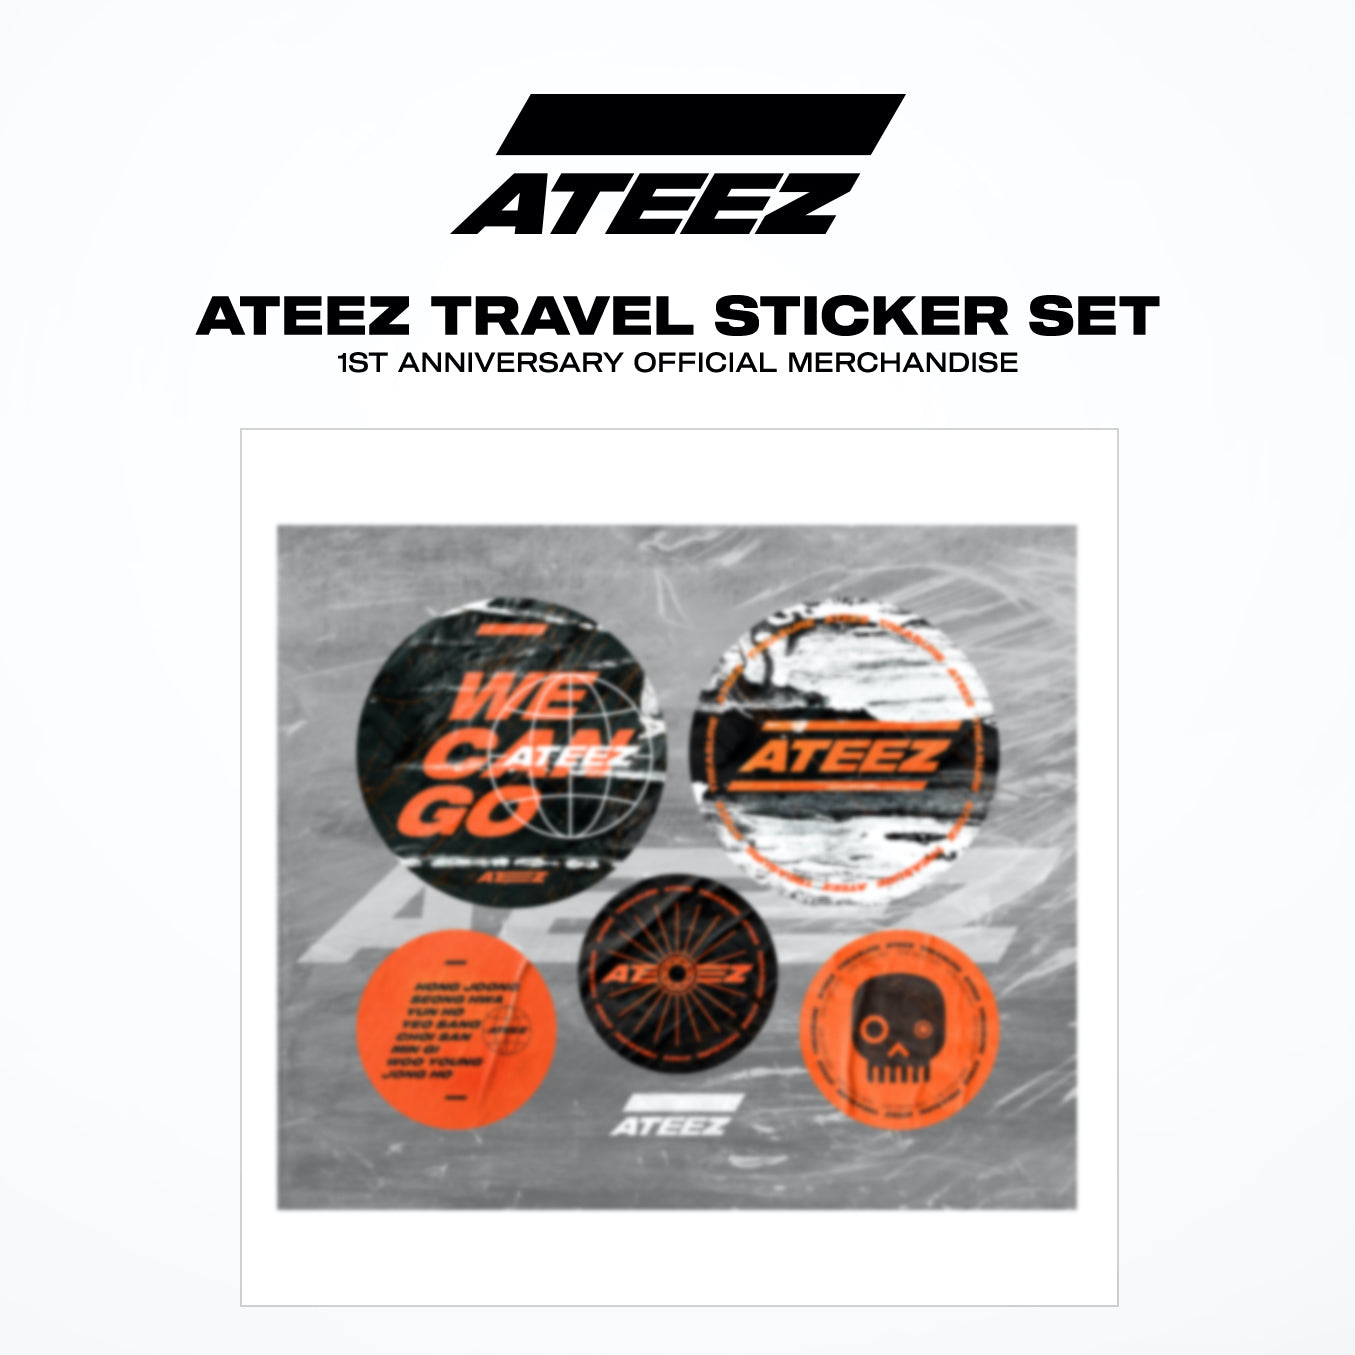 ATEEZ Travel Sticker Set